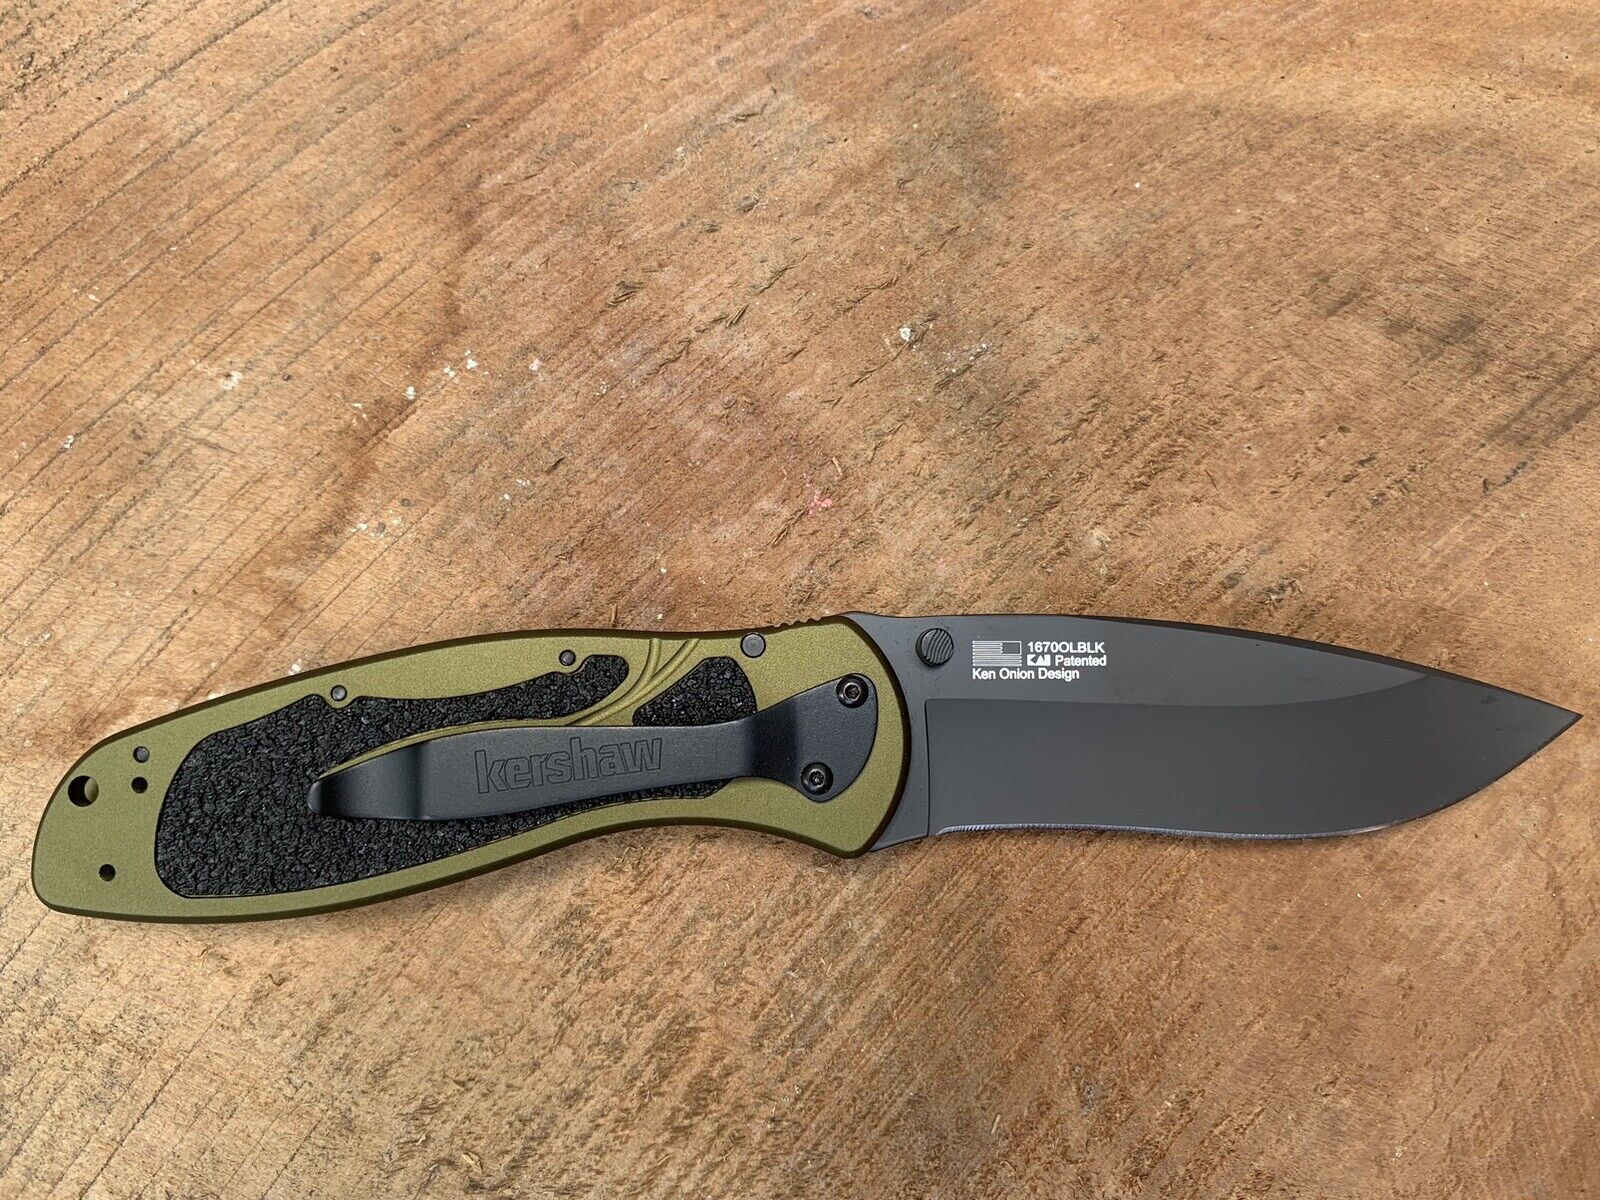 NEW Kershaw USA Ken Onion 1670OLBLK Blur Olive Drab Green Linerlock Pocket Knife